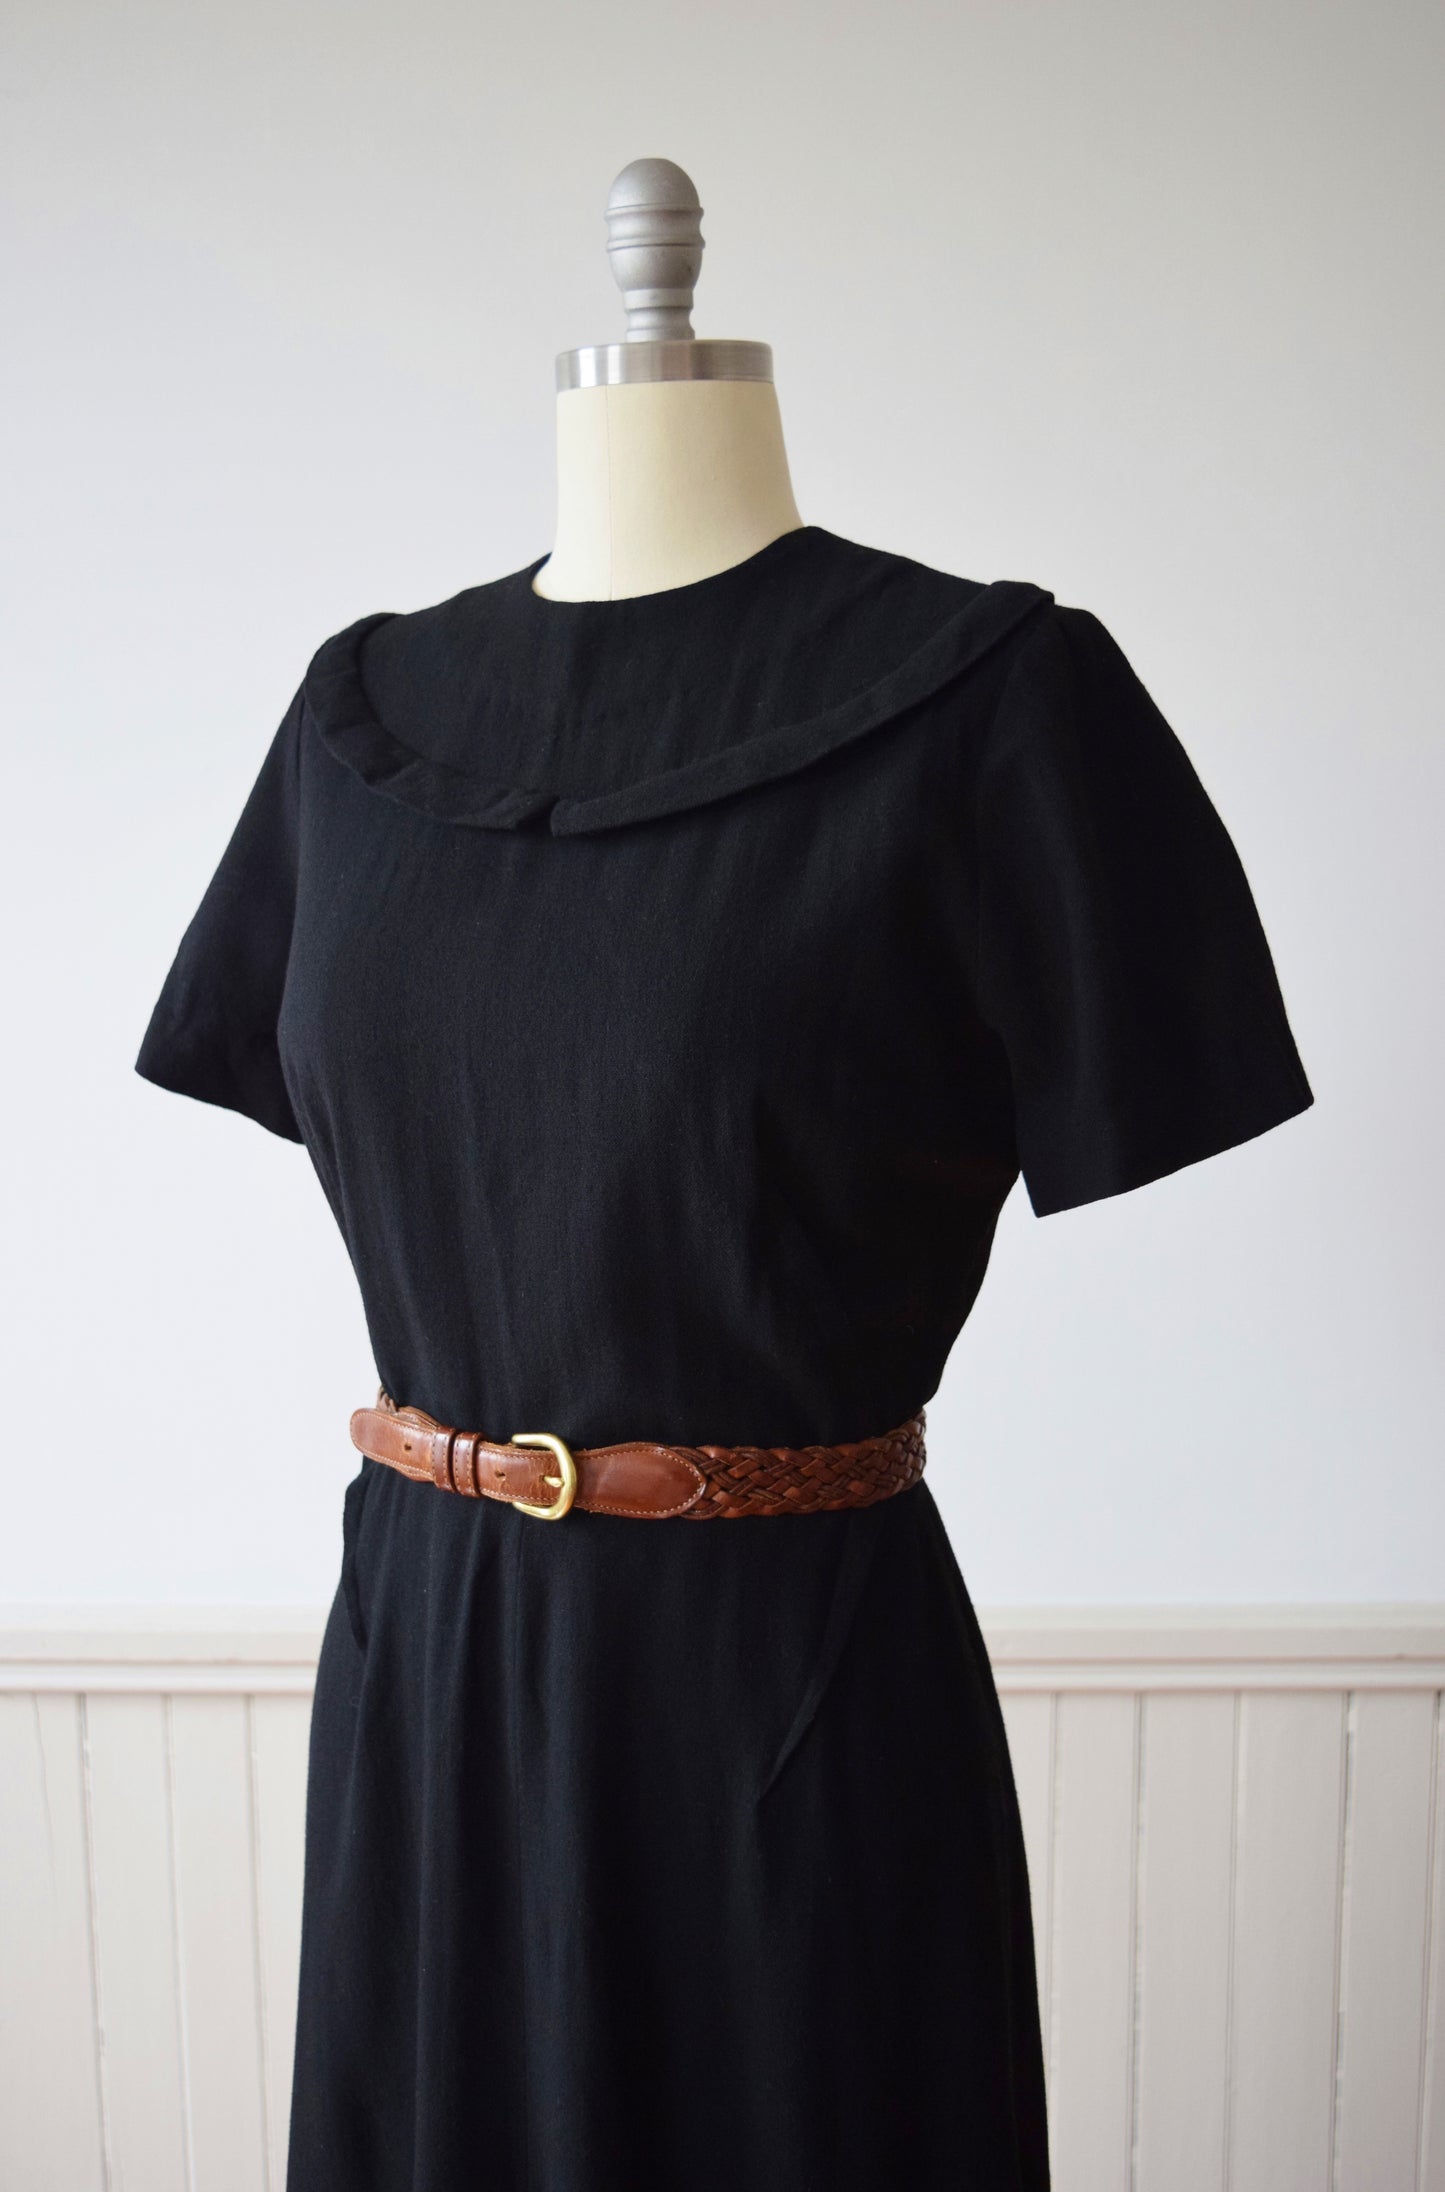 1960s Black Wool Sheath Dress | Early 1960s Vintage Dress | M